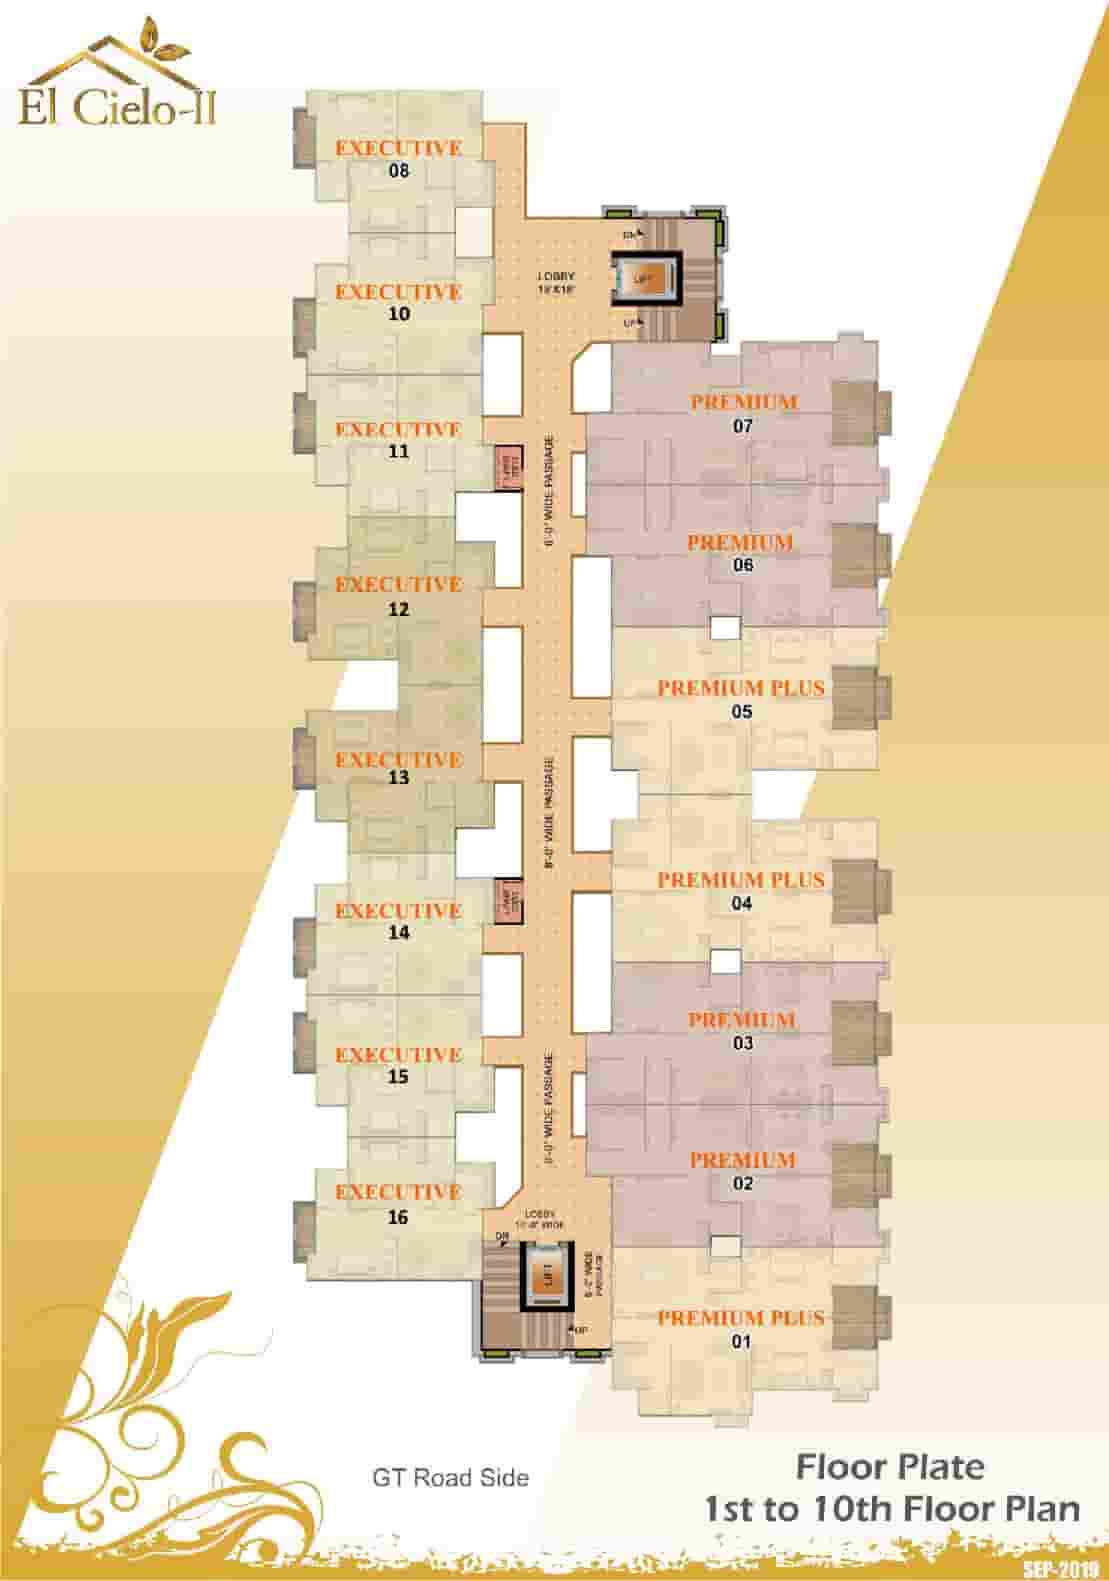 El Cielo-II 1st to 10th Floor Plan